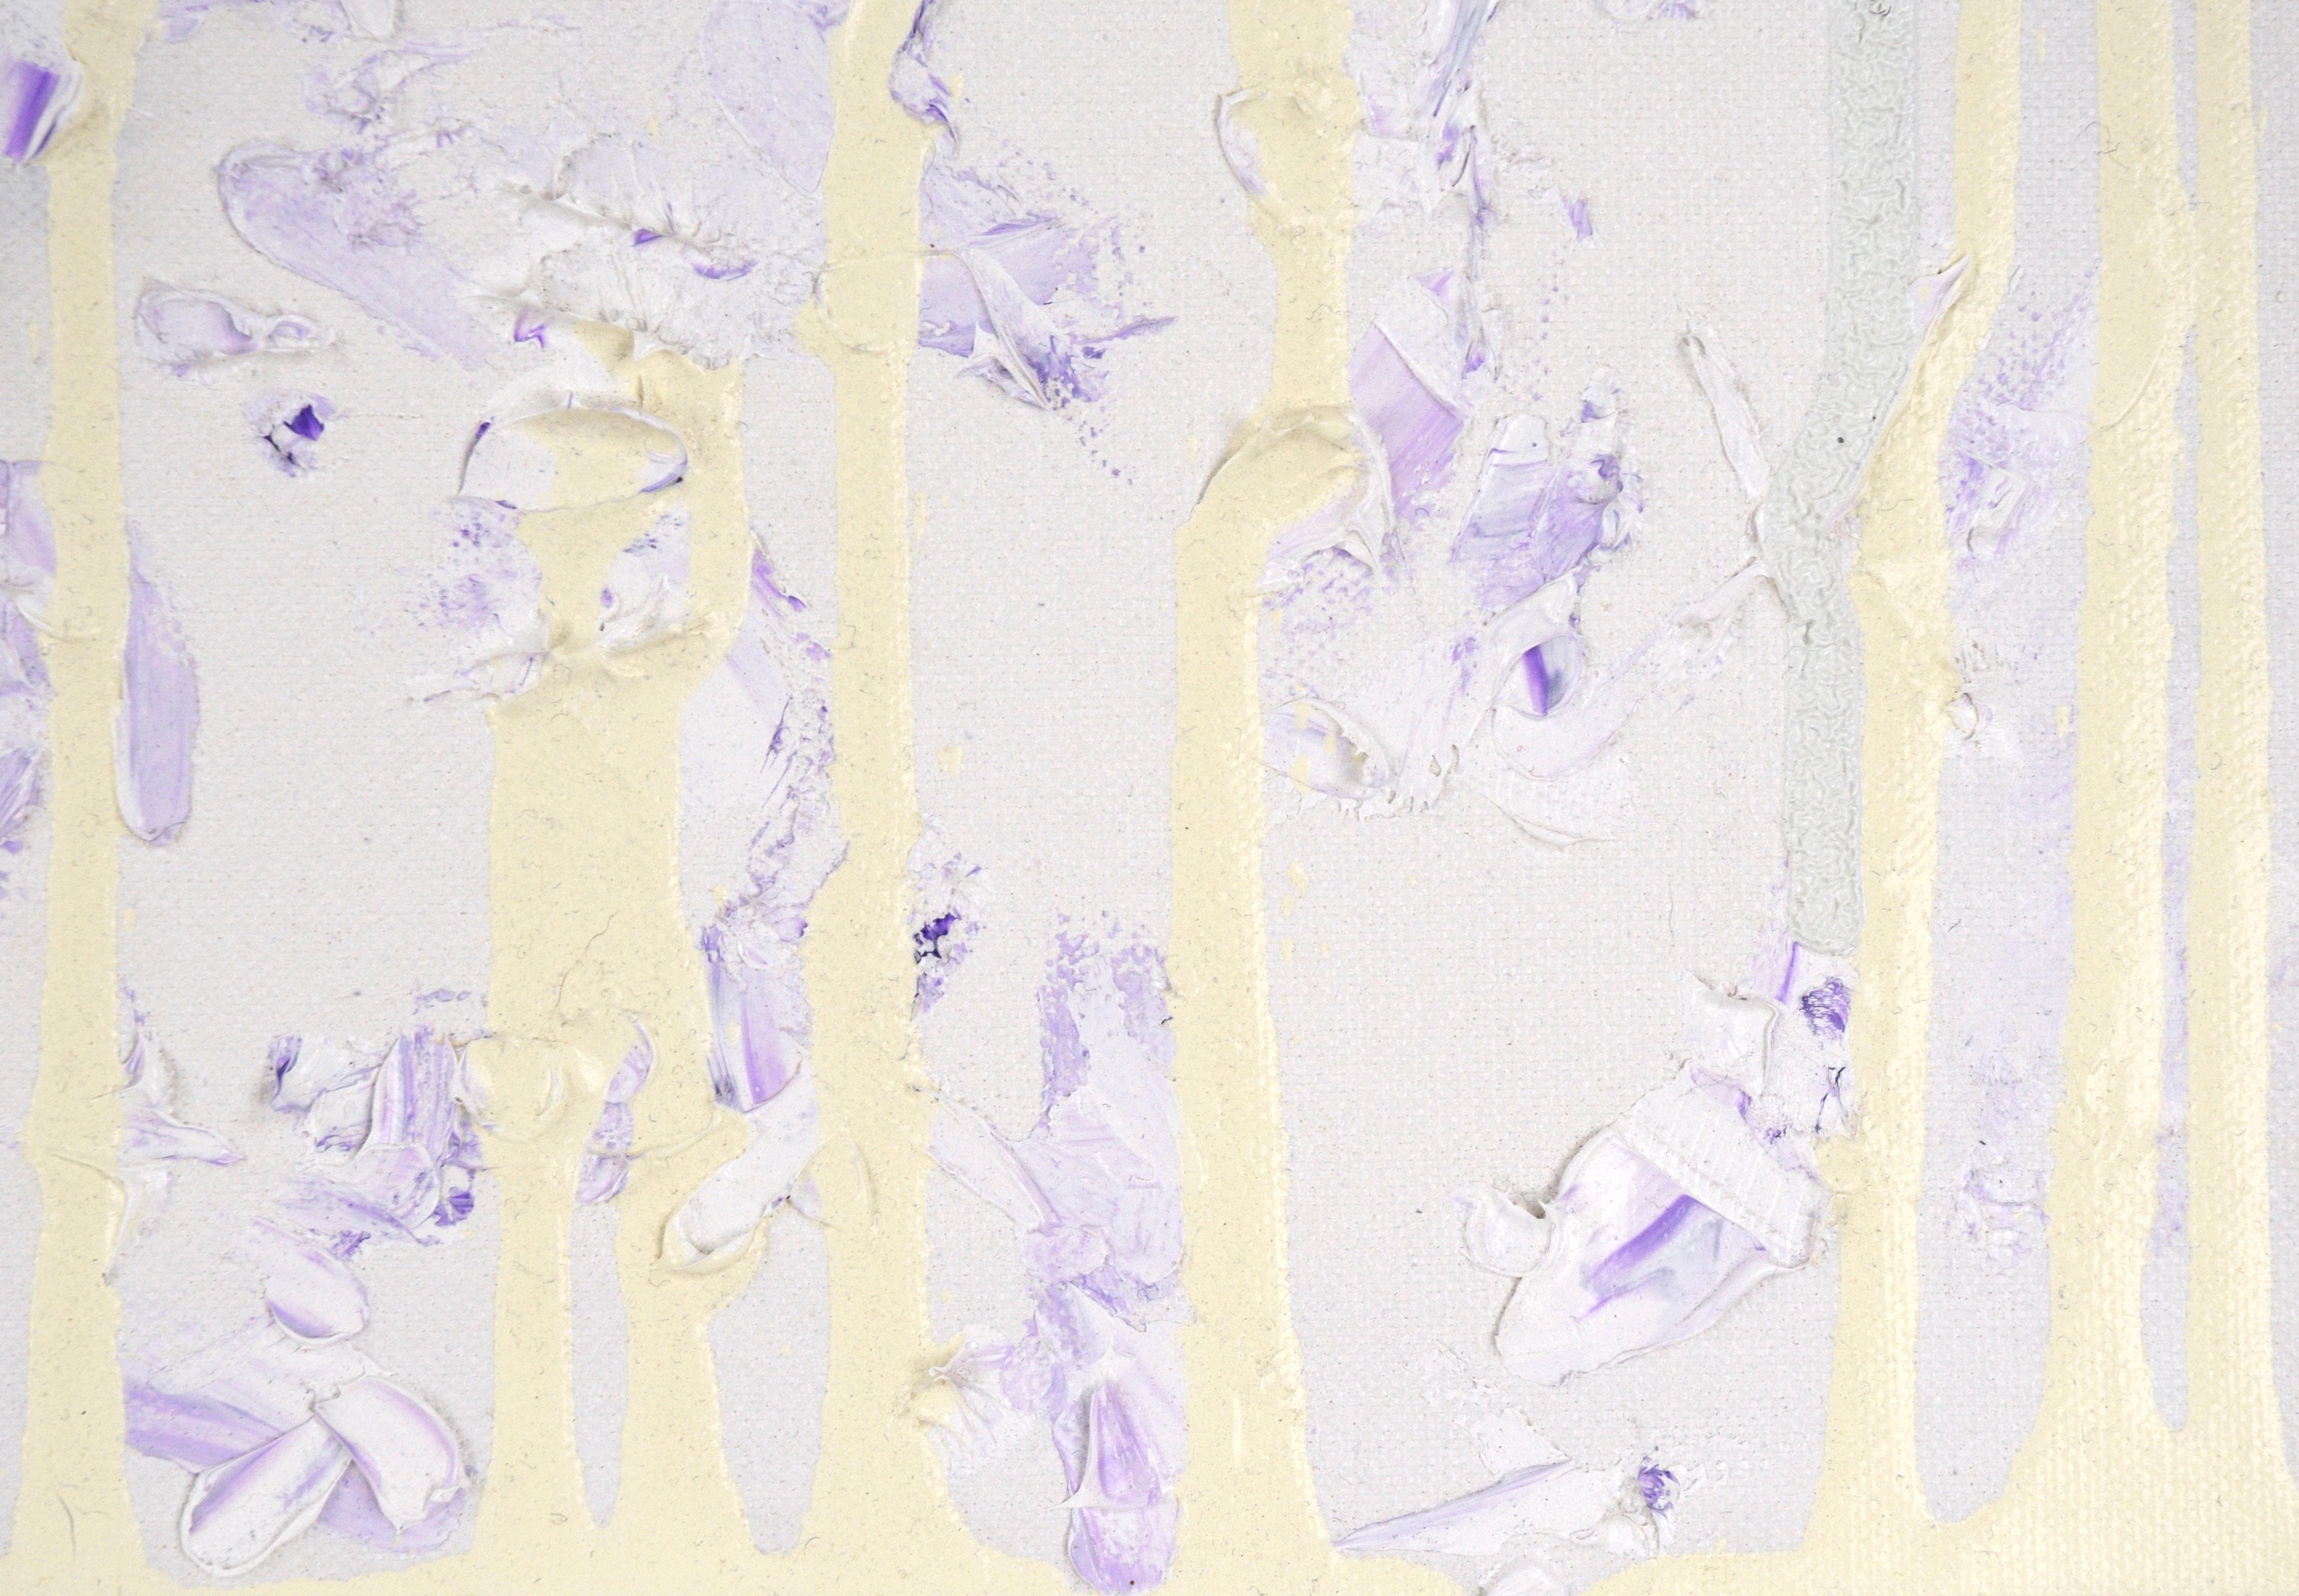 composition subtilement colorée mais hautement texturée de l'artiste californien Devon Brockopp-Hammer (Américain, né en 1986). La couche inférieure est composée de peinture blanche et violette appliquée avec un couteau à palette, créant une texture